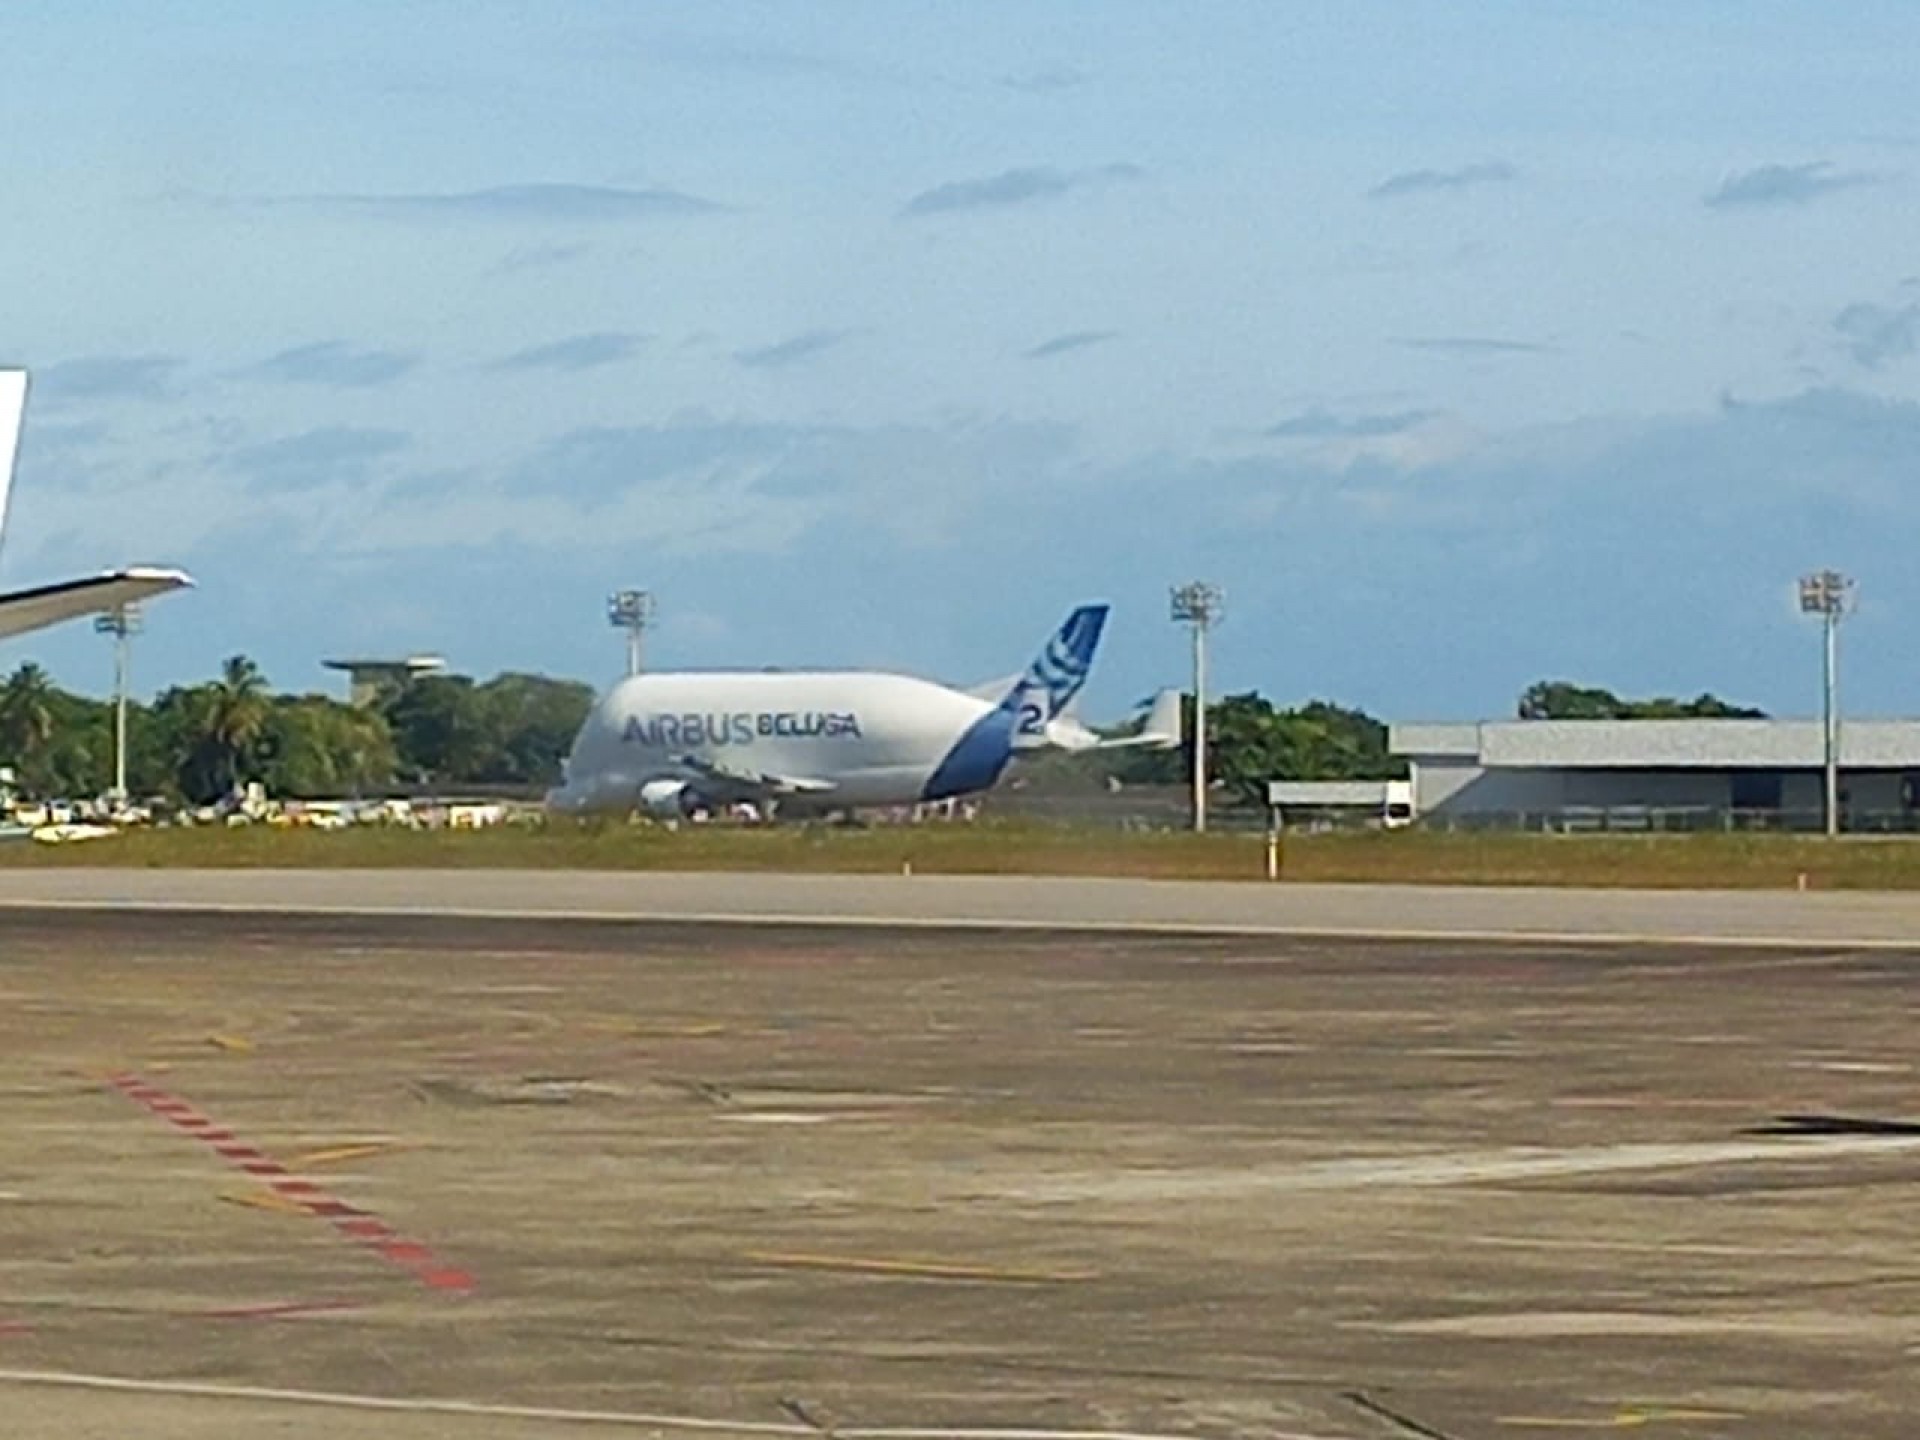 O avião baleia Beluga ST chegou neste domingo (24) a #Fortaleza